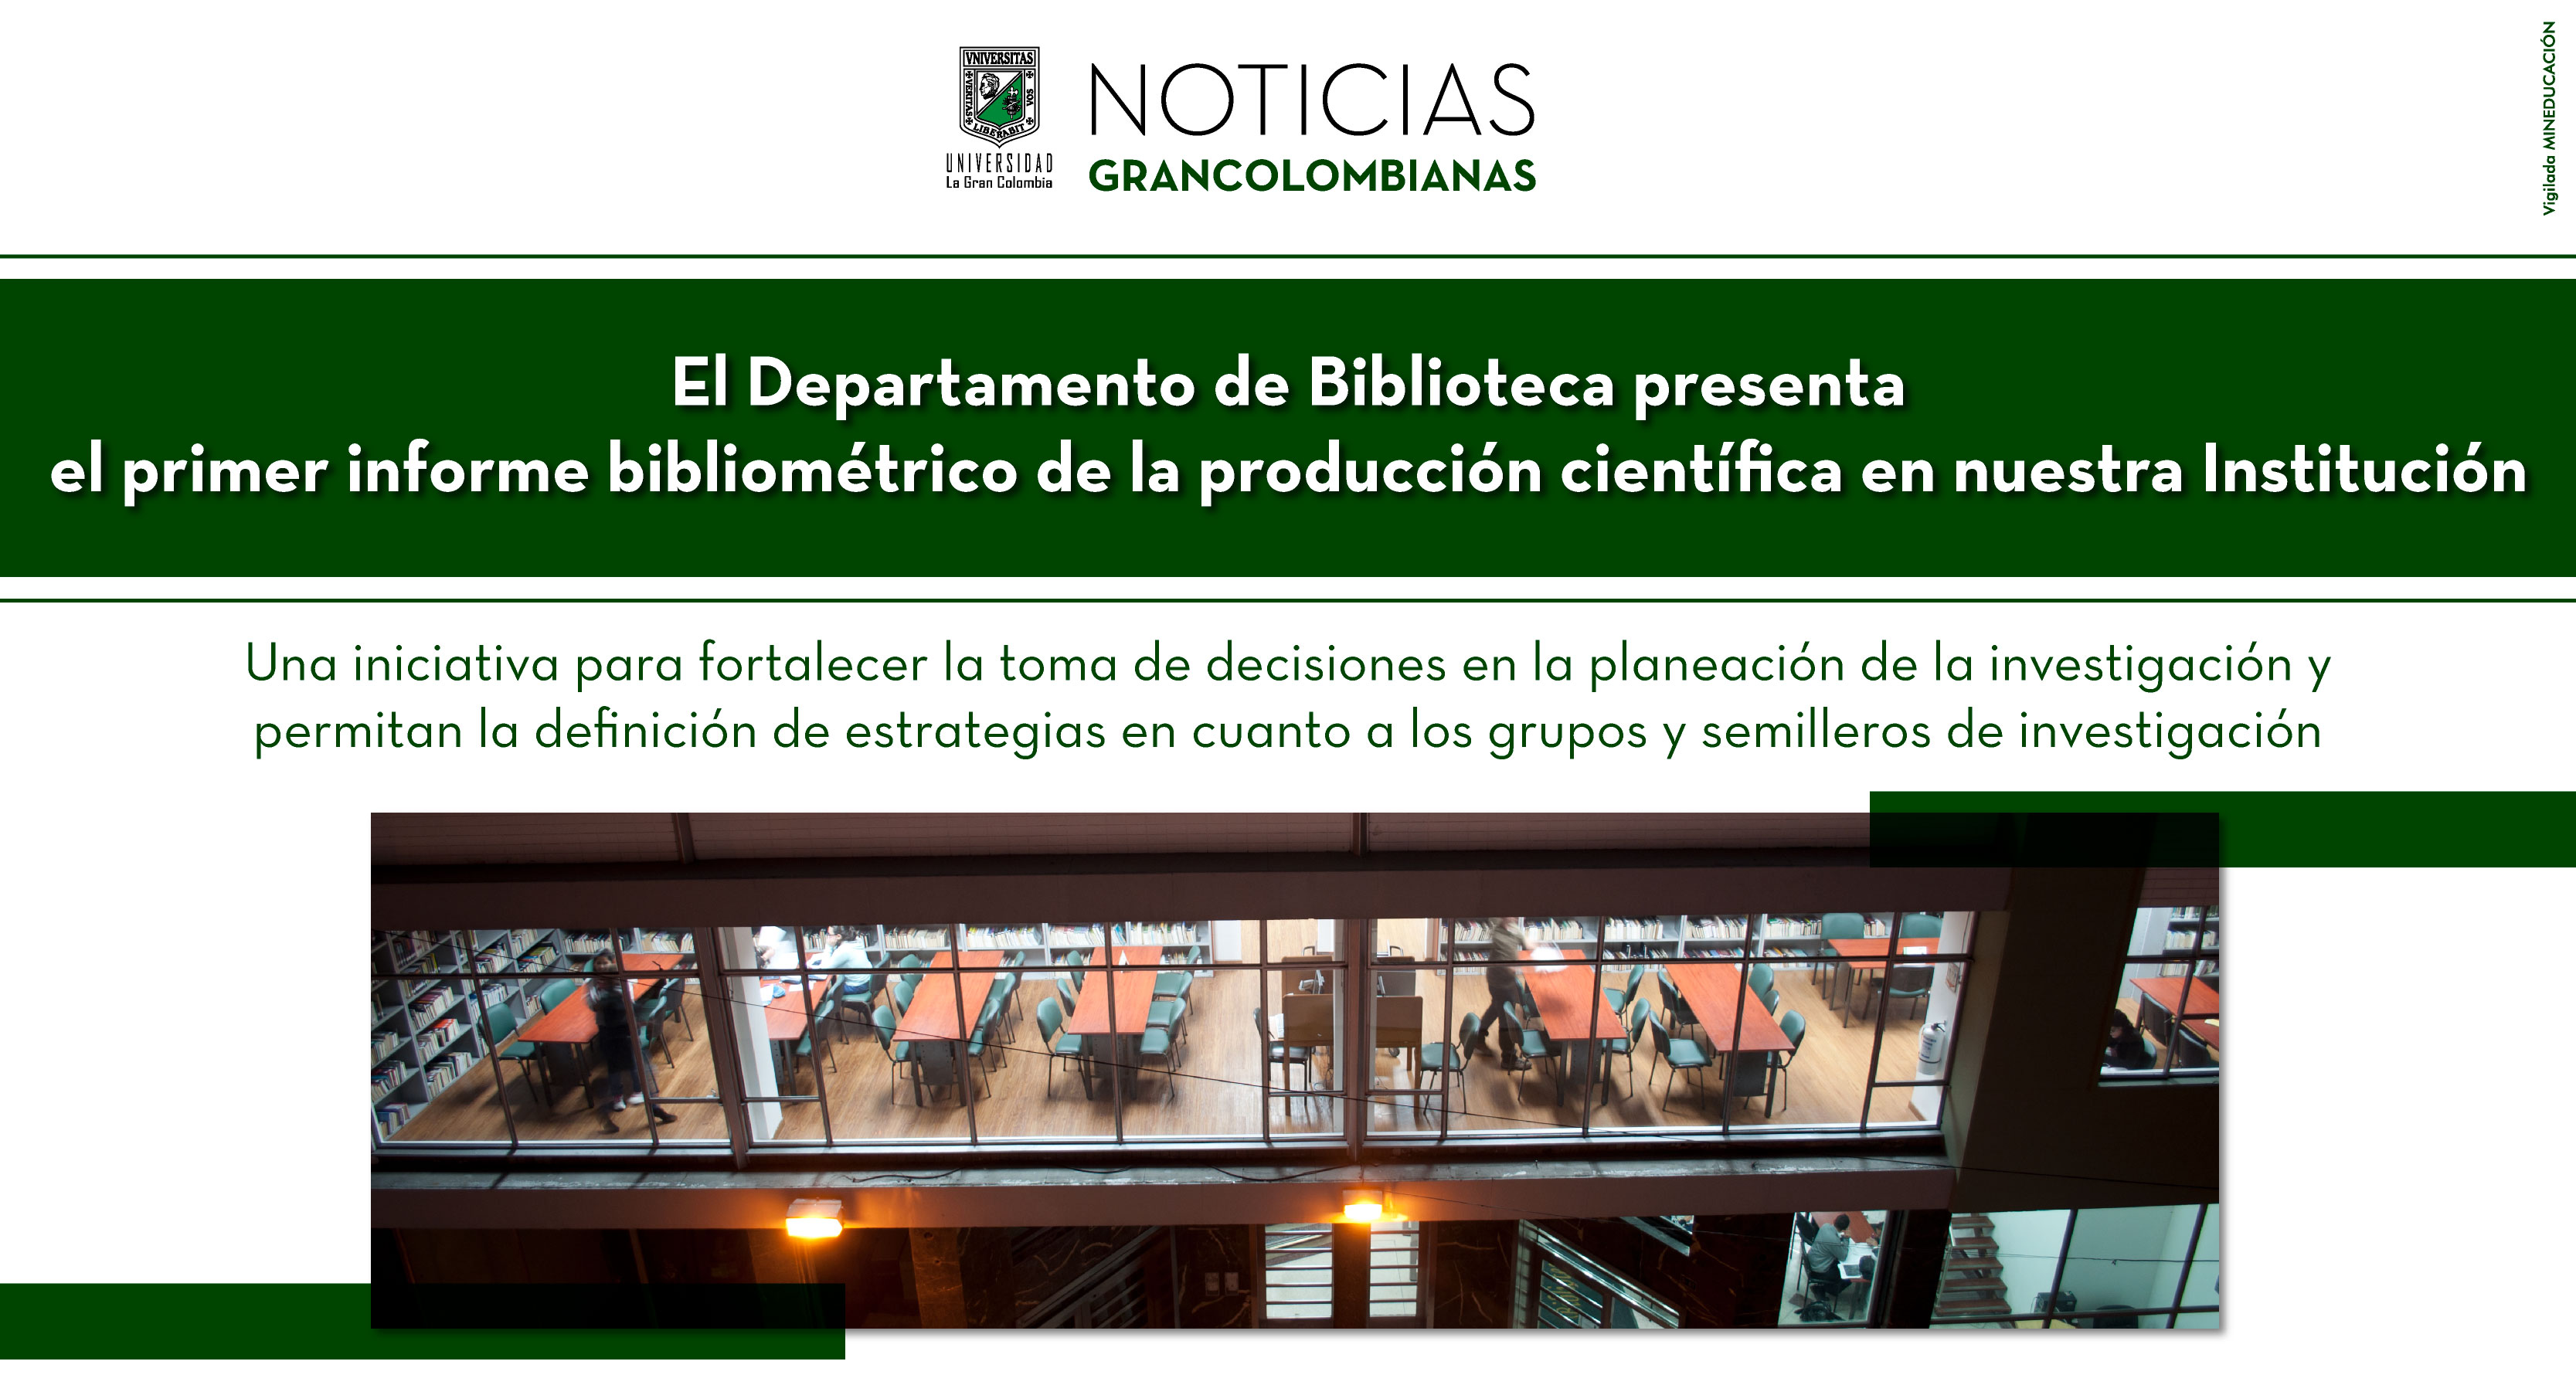 El Departamento de Biblioteca presenta el primer informe bibliométrico de la producción científica en nuestra Institución